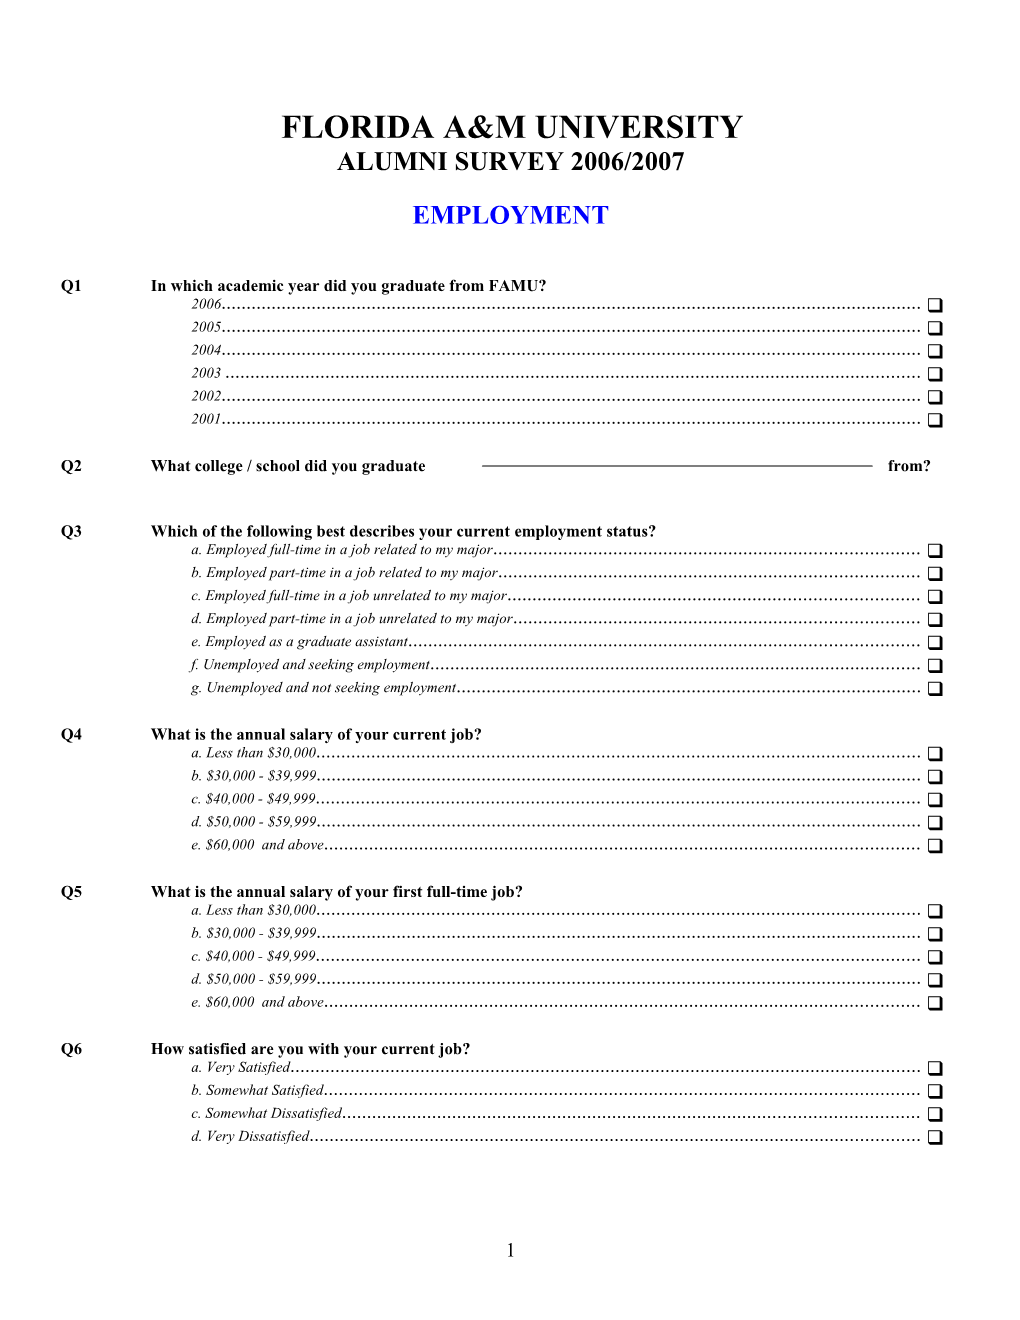 Alumni Survey 2006/2007